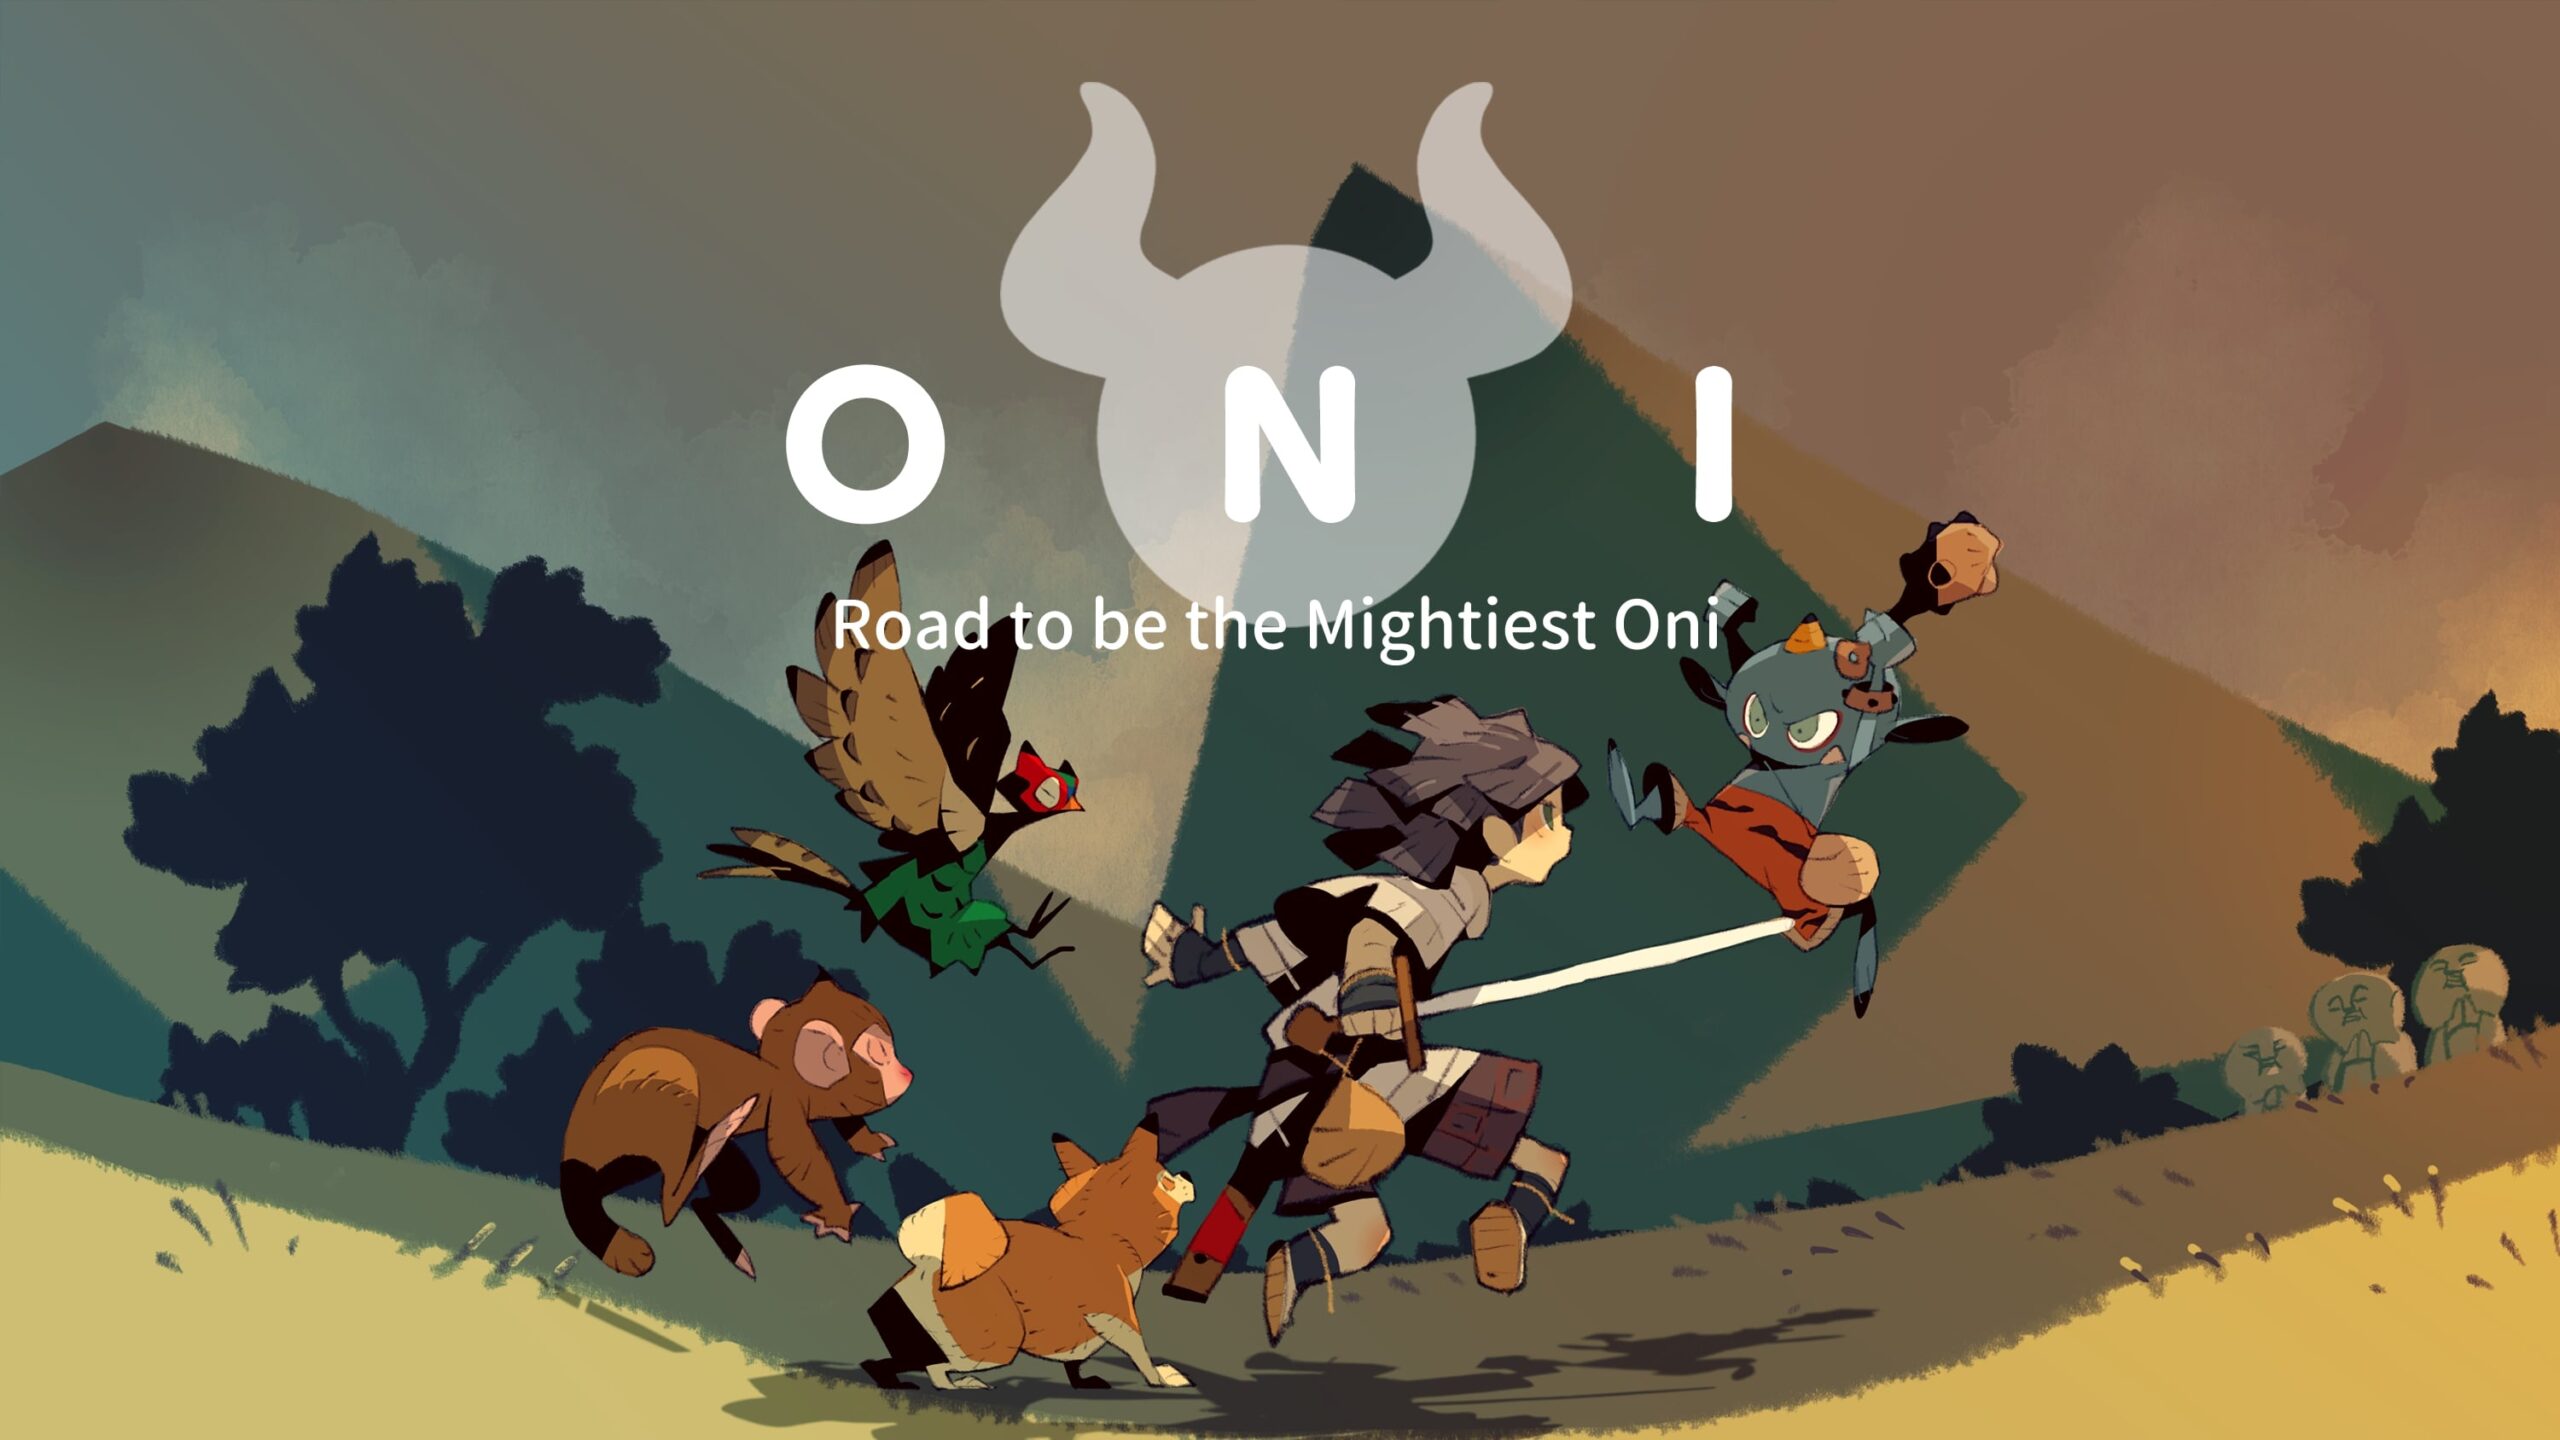 لعبة الأكشن والمغامرات ONI: Road to be the Mightiest Oni قادمة إلى الحاسب الشخصي والبلايستيشن هذا العام